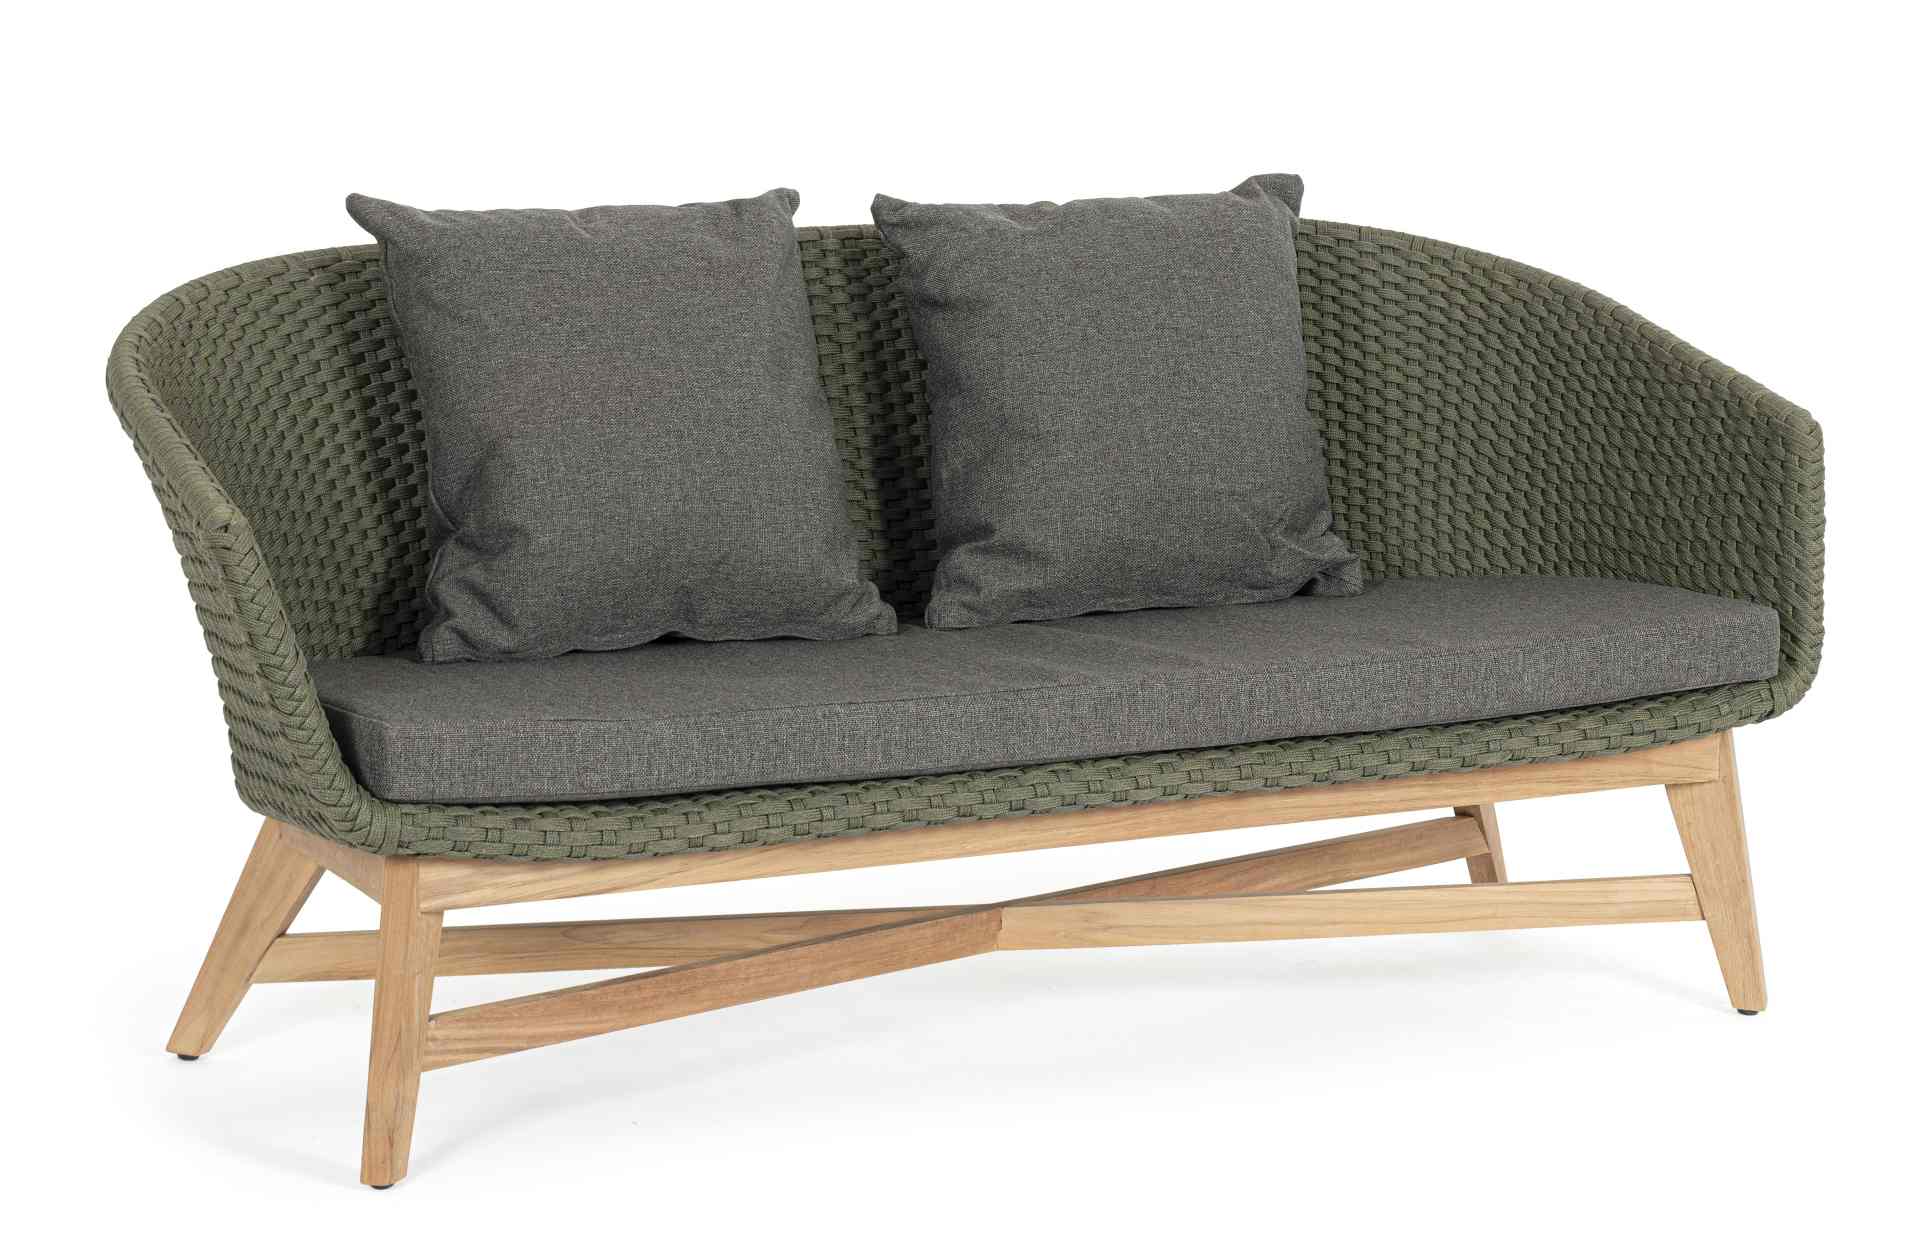 Das Gartensofa Coachella überzeugt mit seinem modernen Design. Gefertigt wurde es aus Olefin-Stoff, welcher einen grünen Farbton besitzt. Das Gestell ist aus Teakholz und hat eine natürliche Farbe. Das Sofa verfügt über eine Sitzhöhe von 39 cm und ist für